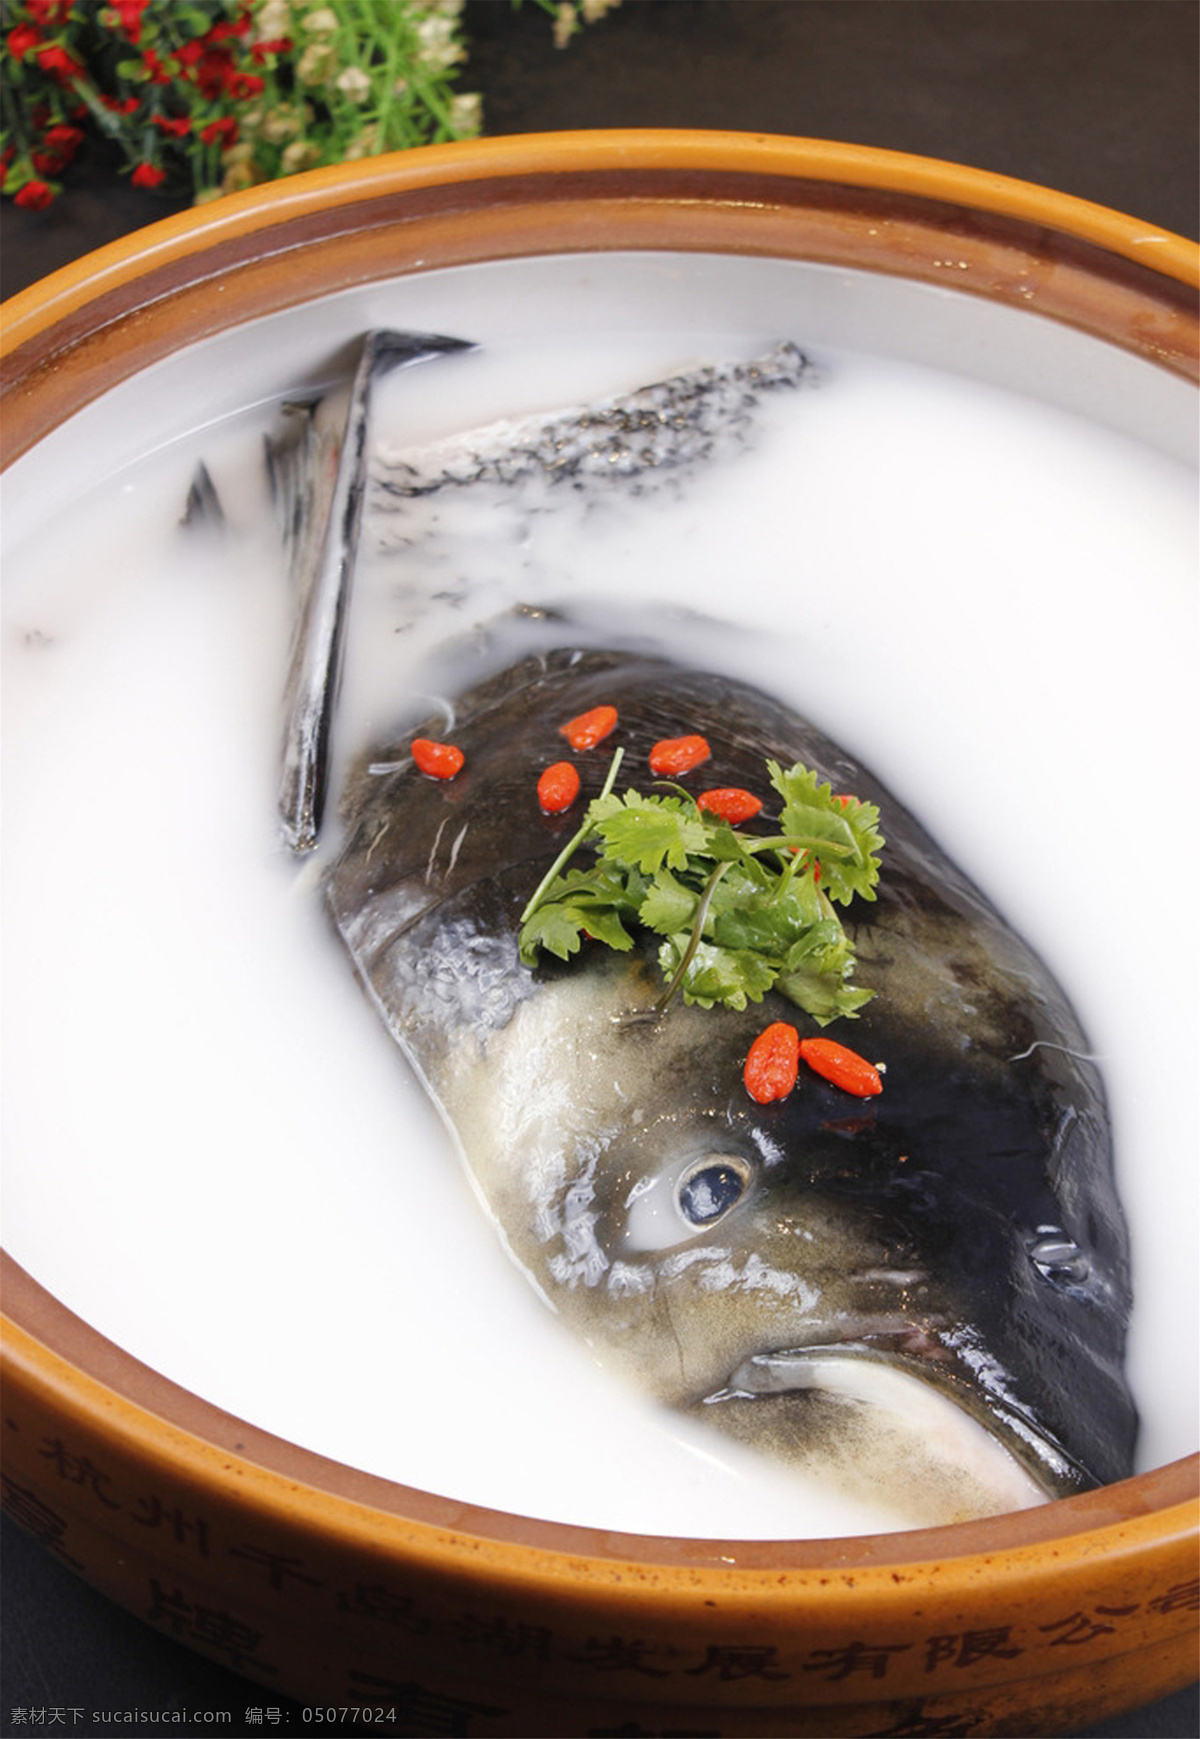 炖 千岛湖 鱼头 炖千岛湖鱼头 美食 传统美食 餐饮美食 高清菜谱用图